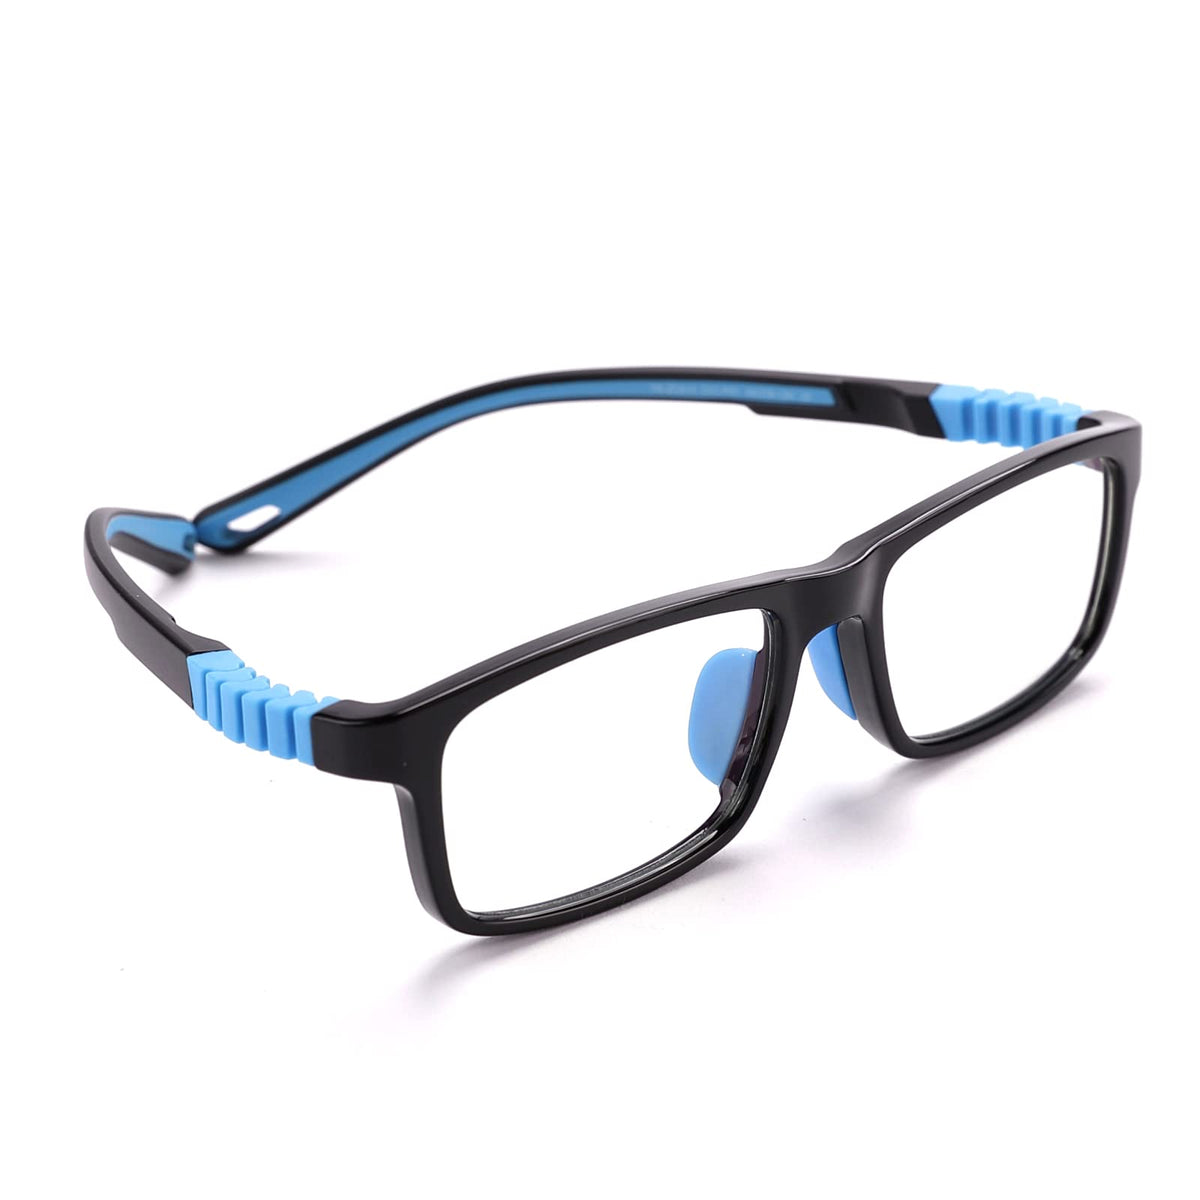 Intellilens Square Kids Computer Glasses for Eye Protection | Zero Power, Anti Glare & Blue Light Filter Glasses | Blue Cut Lenses for Boys and Girls (Black) (49-16-130)